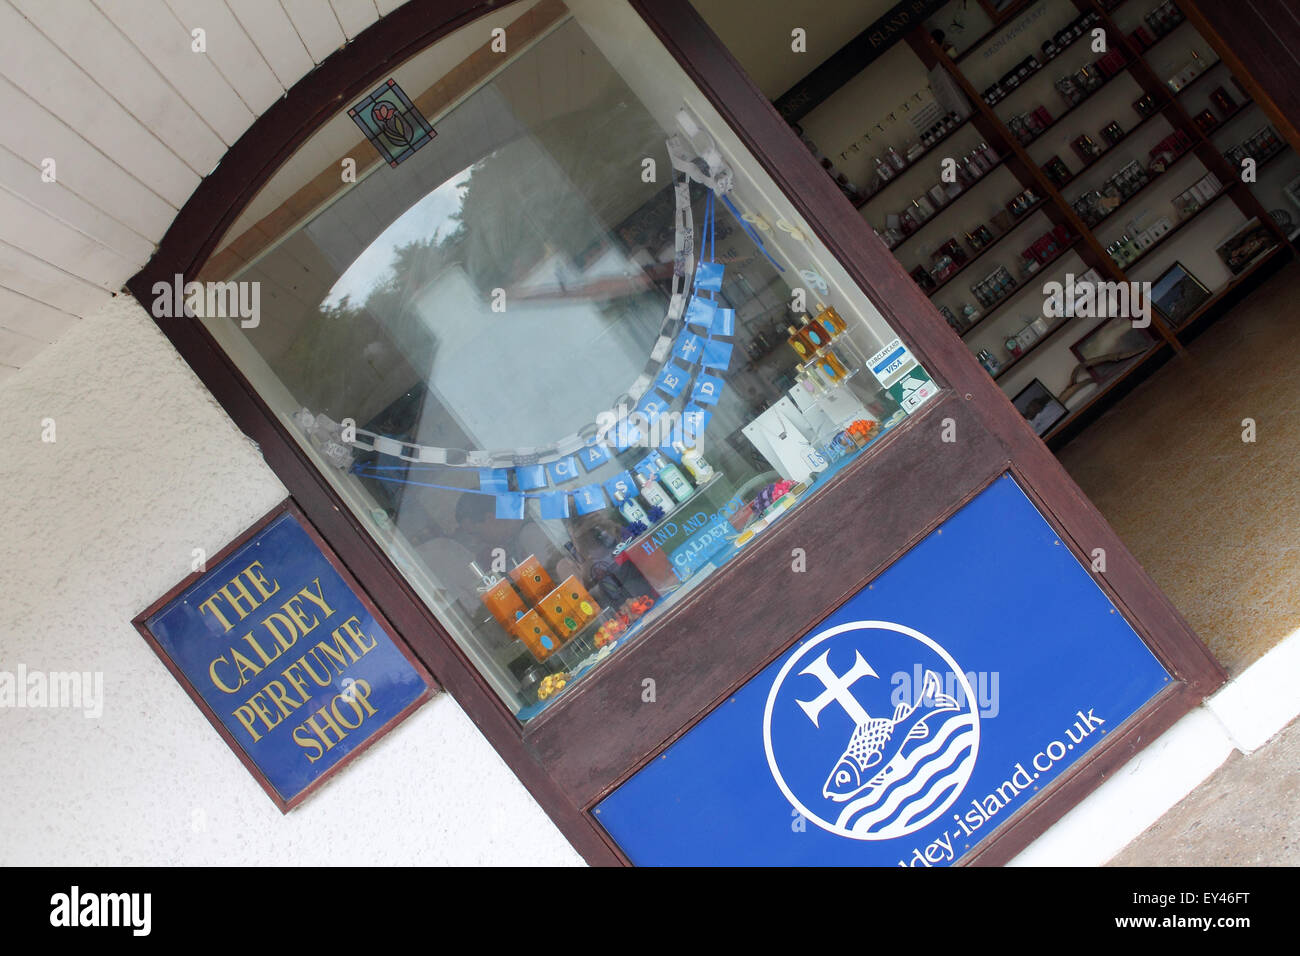 L'île de Caldey perfume shop, près de Tenby, Pembrokeshire, Pays de Galles. UK Banque D'Images